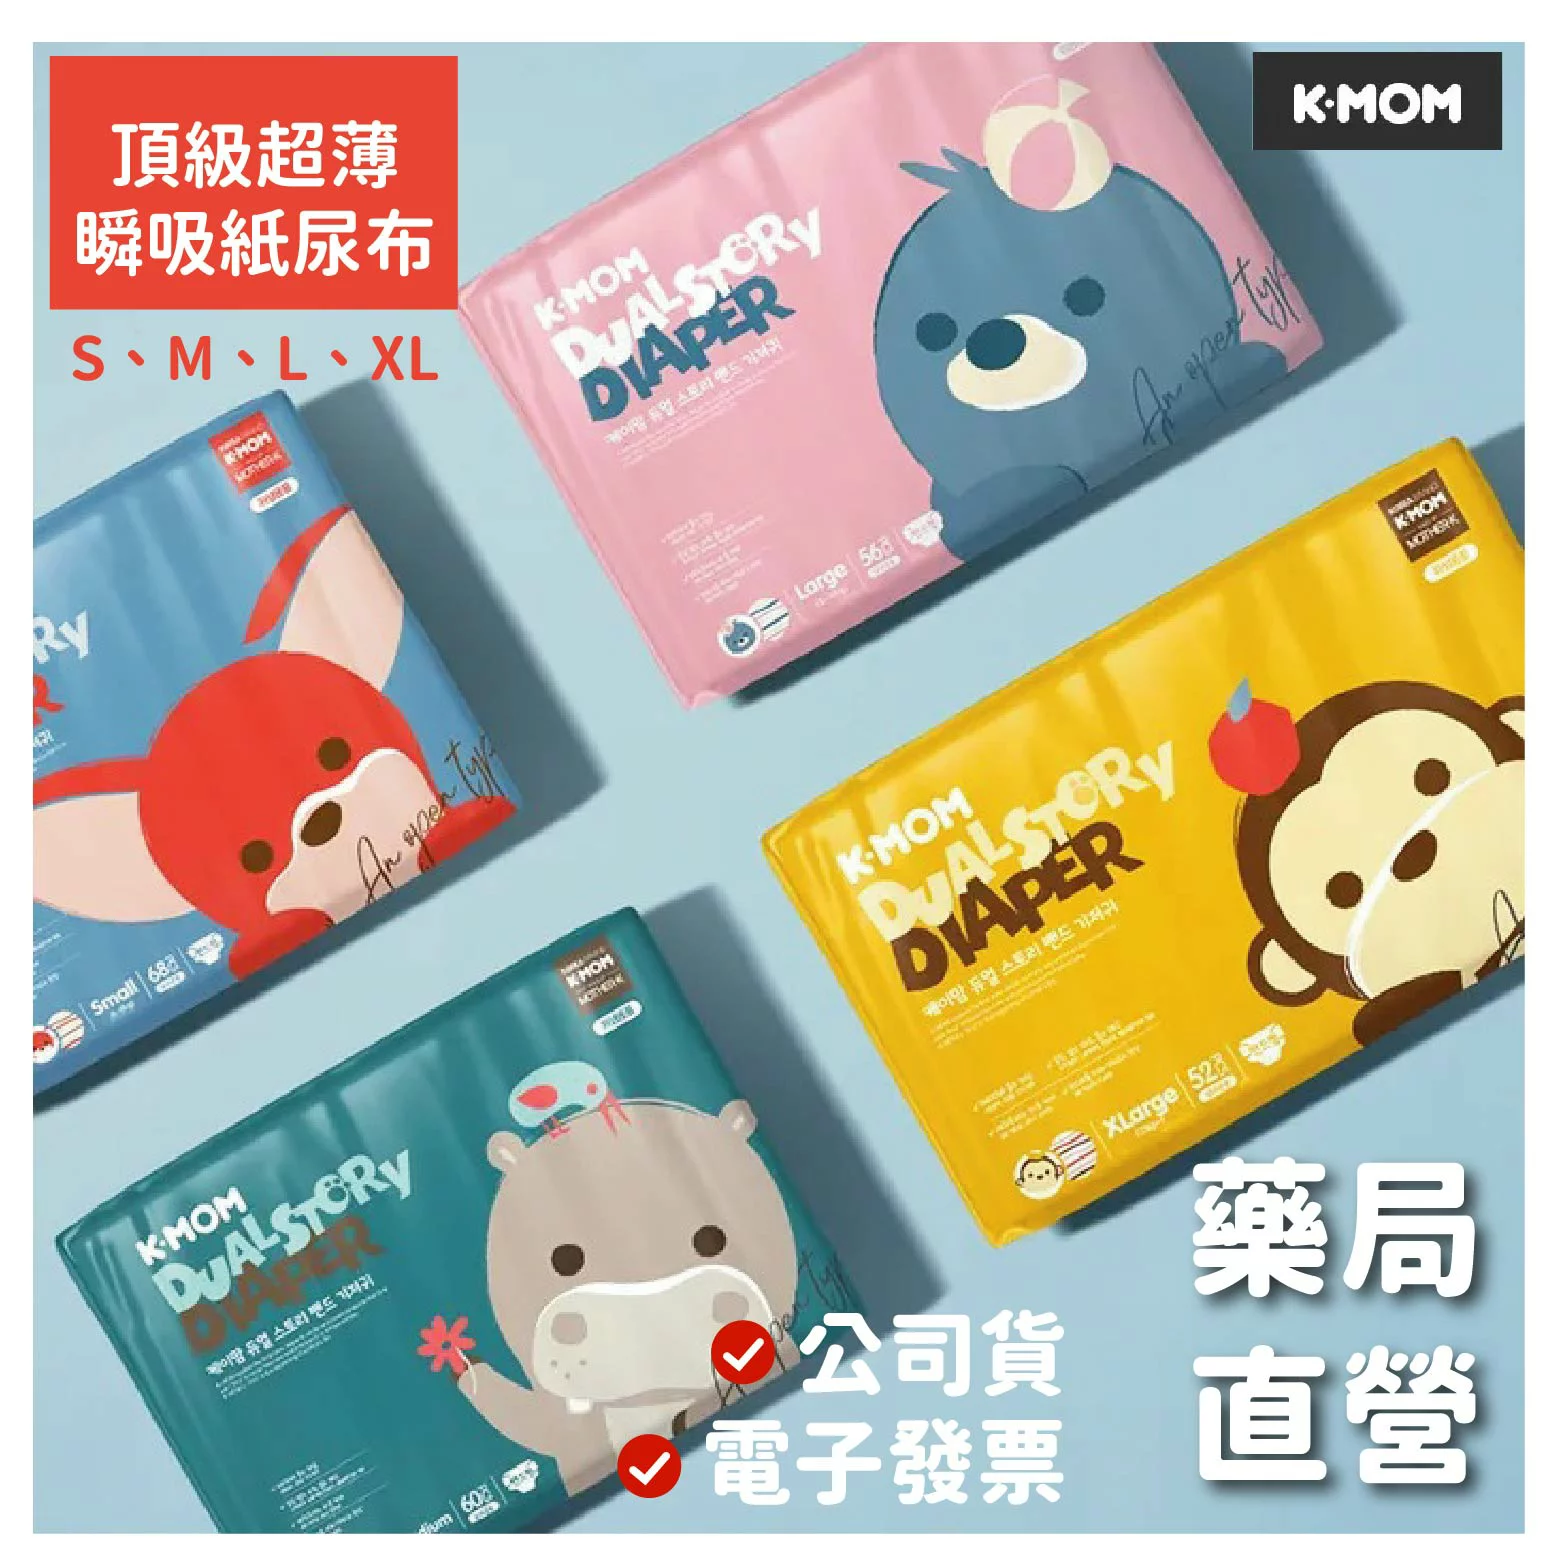 [禾坊藥局]mother.K K.mom 頂級超薄瞬吸紙尿布(S、M、L、XL) 韓國原裝 可愛造型